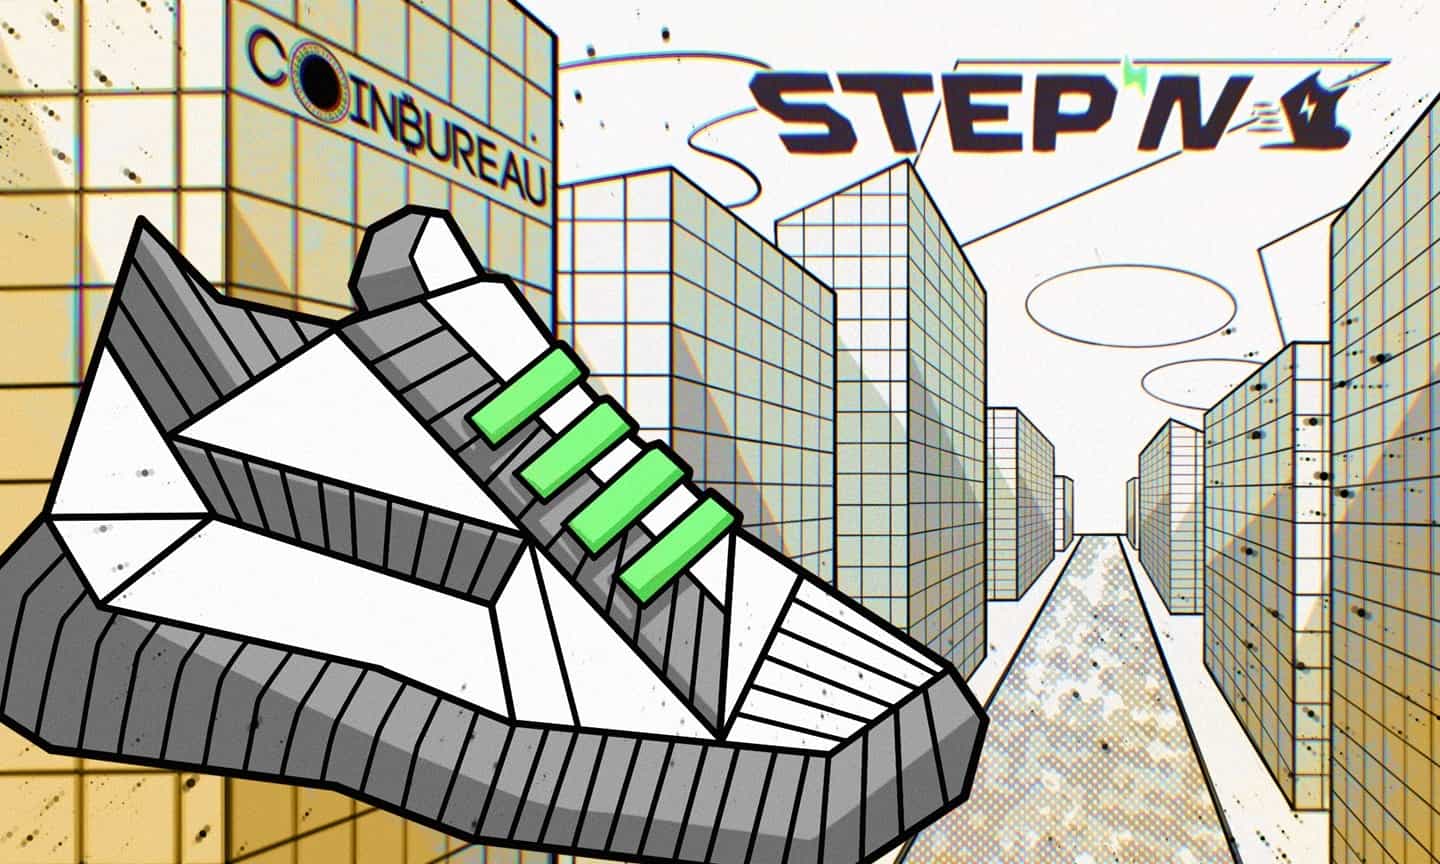 STEPN Review